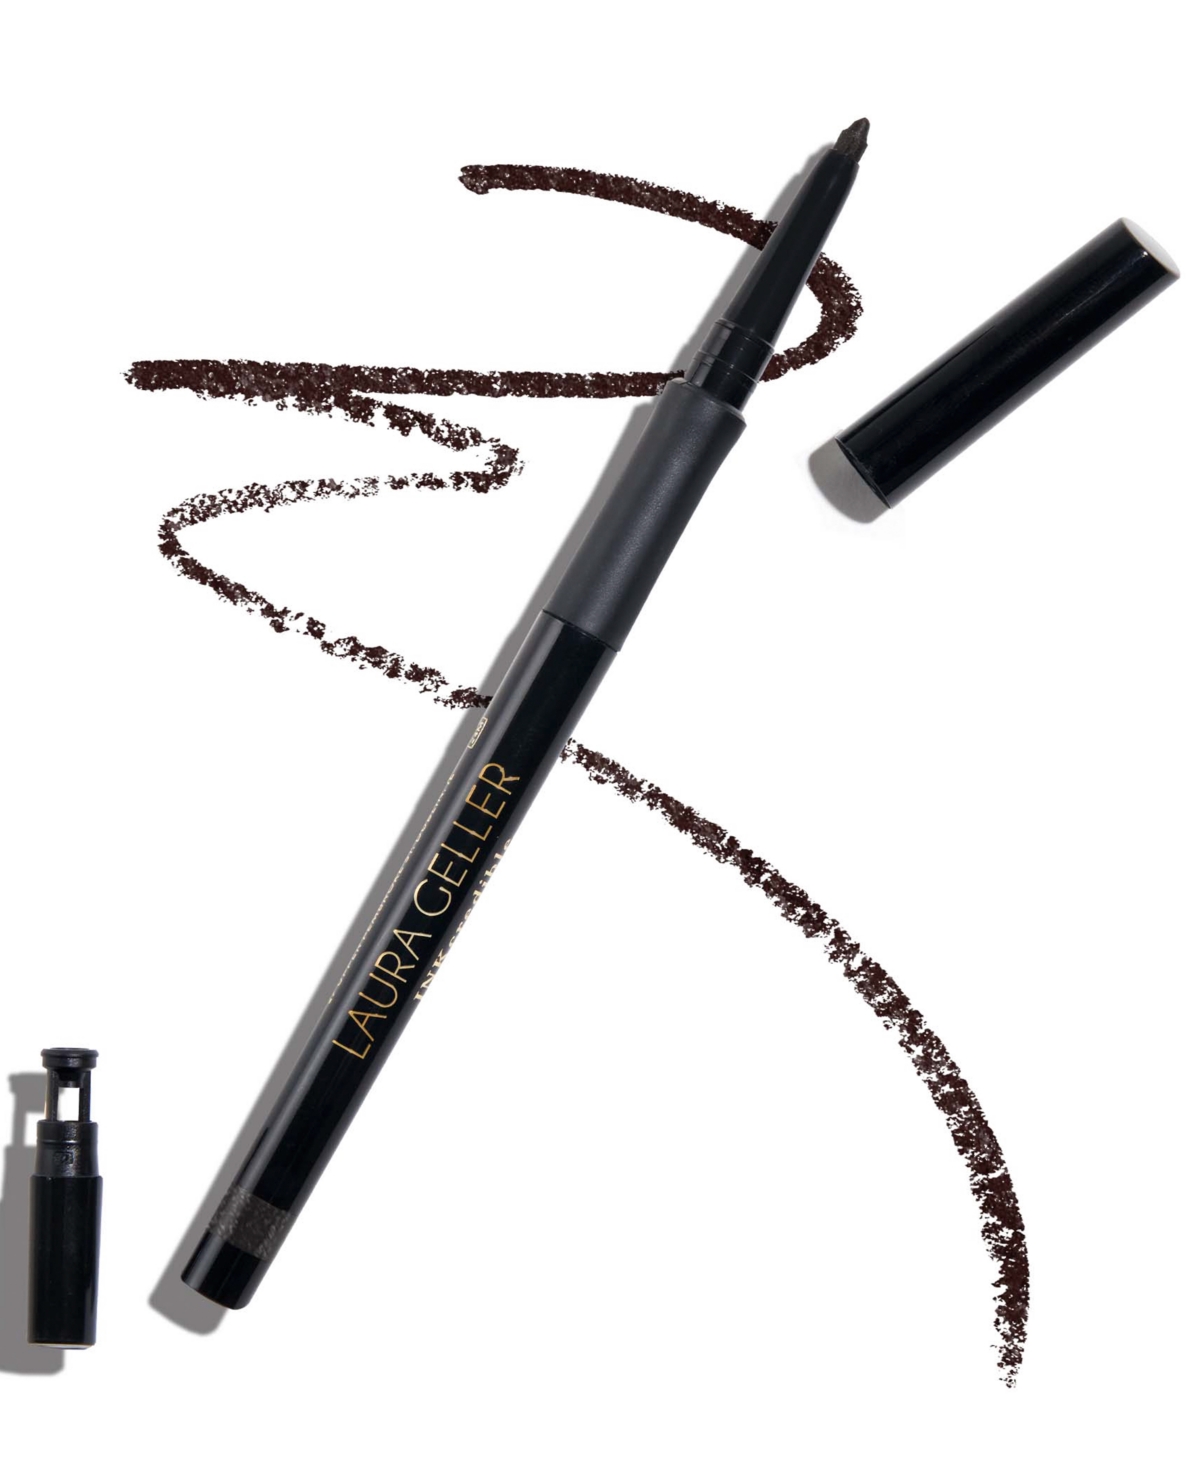 Laura Geller Beauty Inkcredible Waterproof Gel Eyeliner Pencil